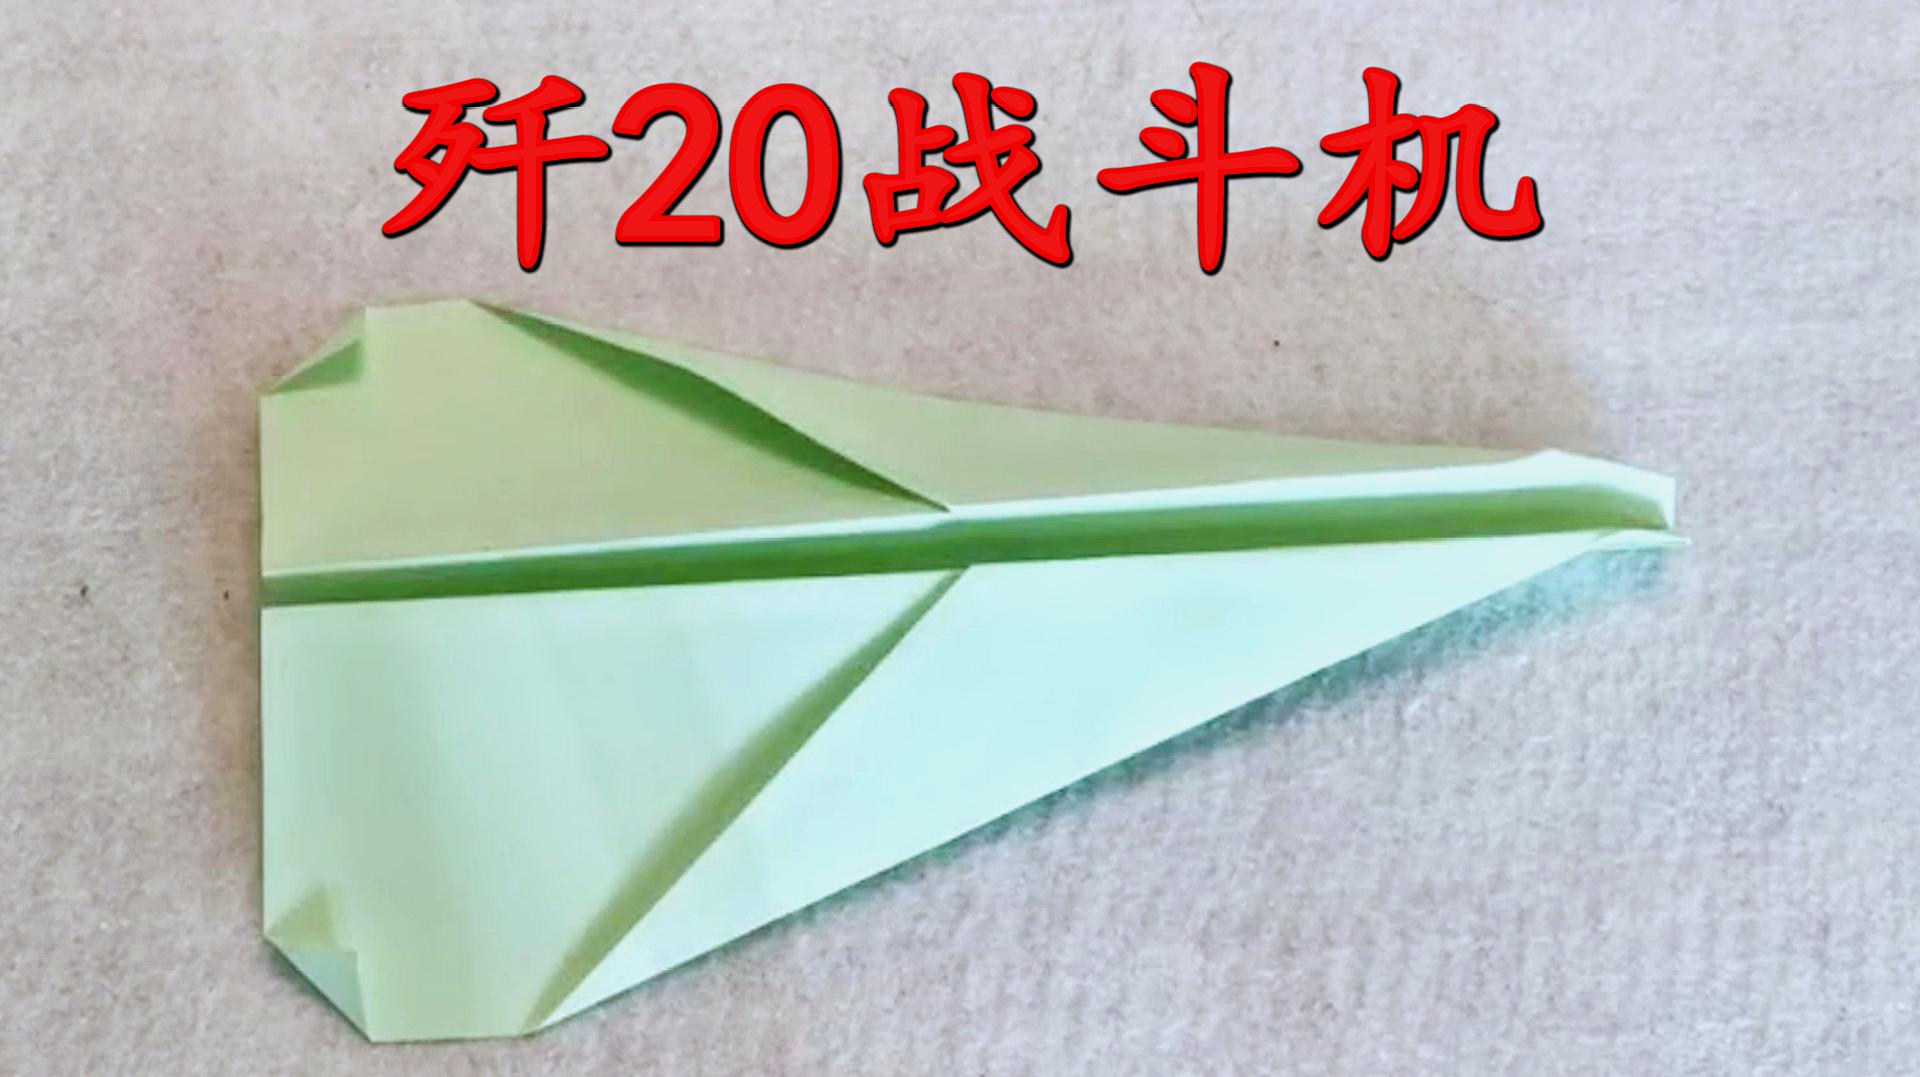 [圆筒纸飞机怎么折飞得远]怎么折飞得远的飞机纸飞机